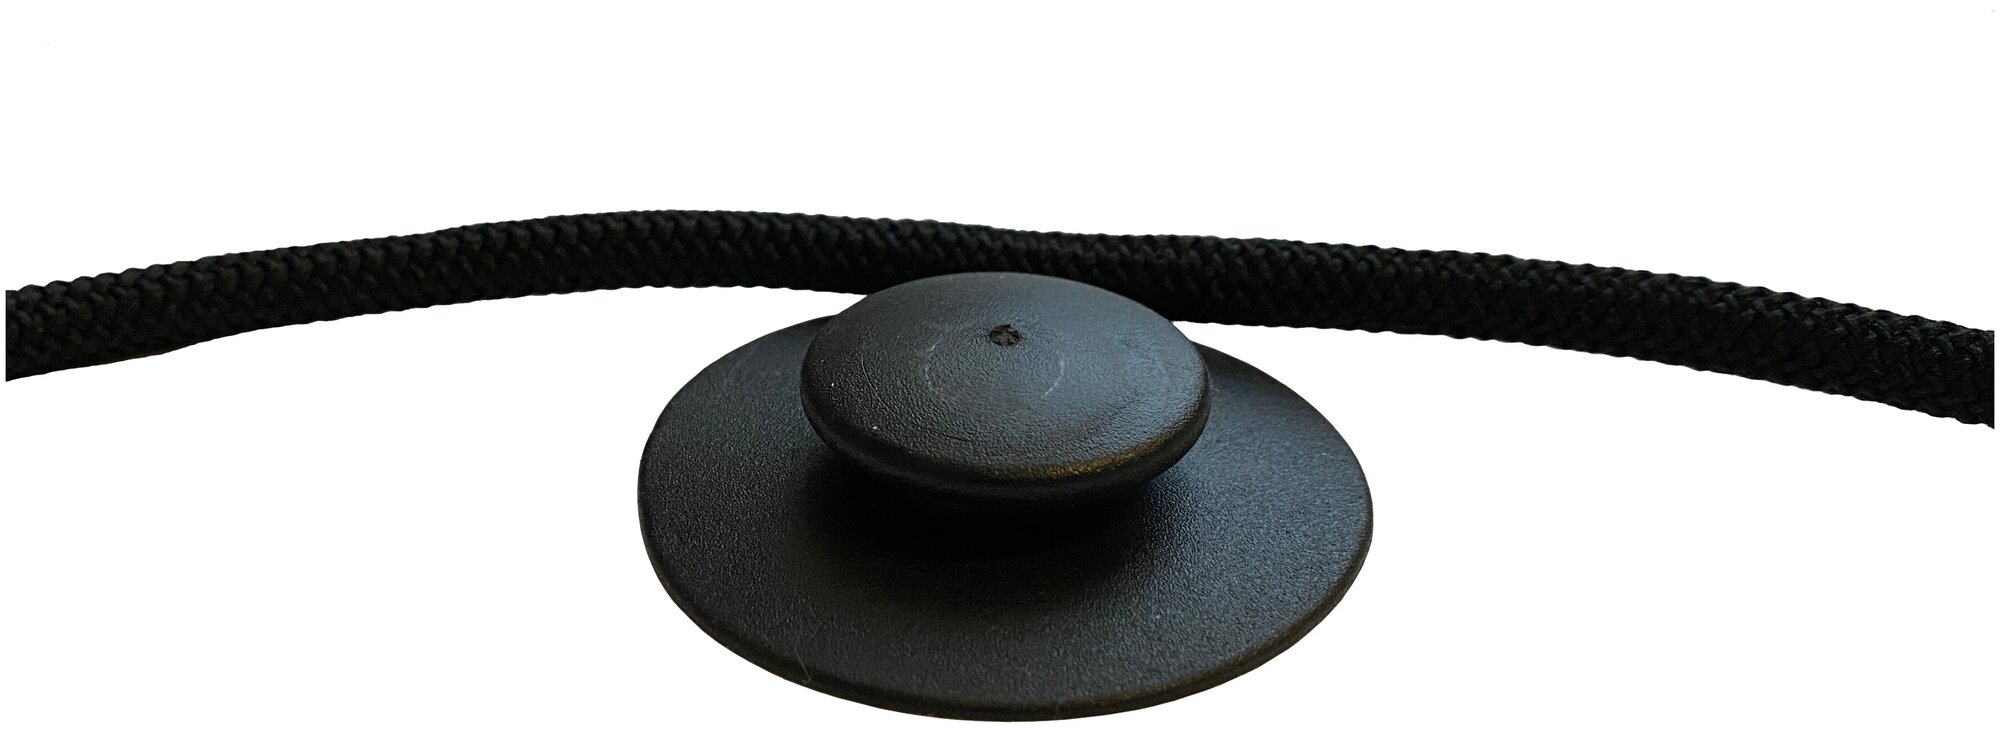 Эластичный шнур 7 мм для крепления тента на крючках, грибках к надувной лодки пвх (3 метра)